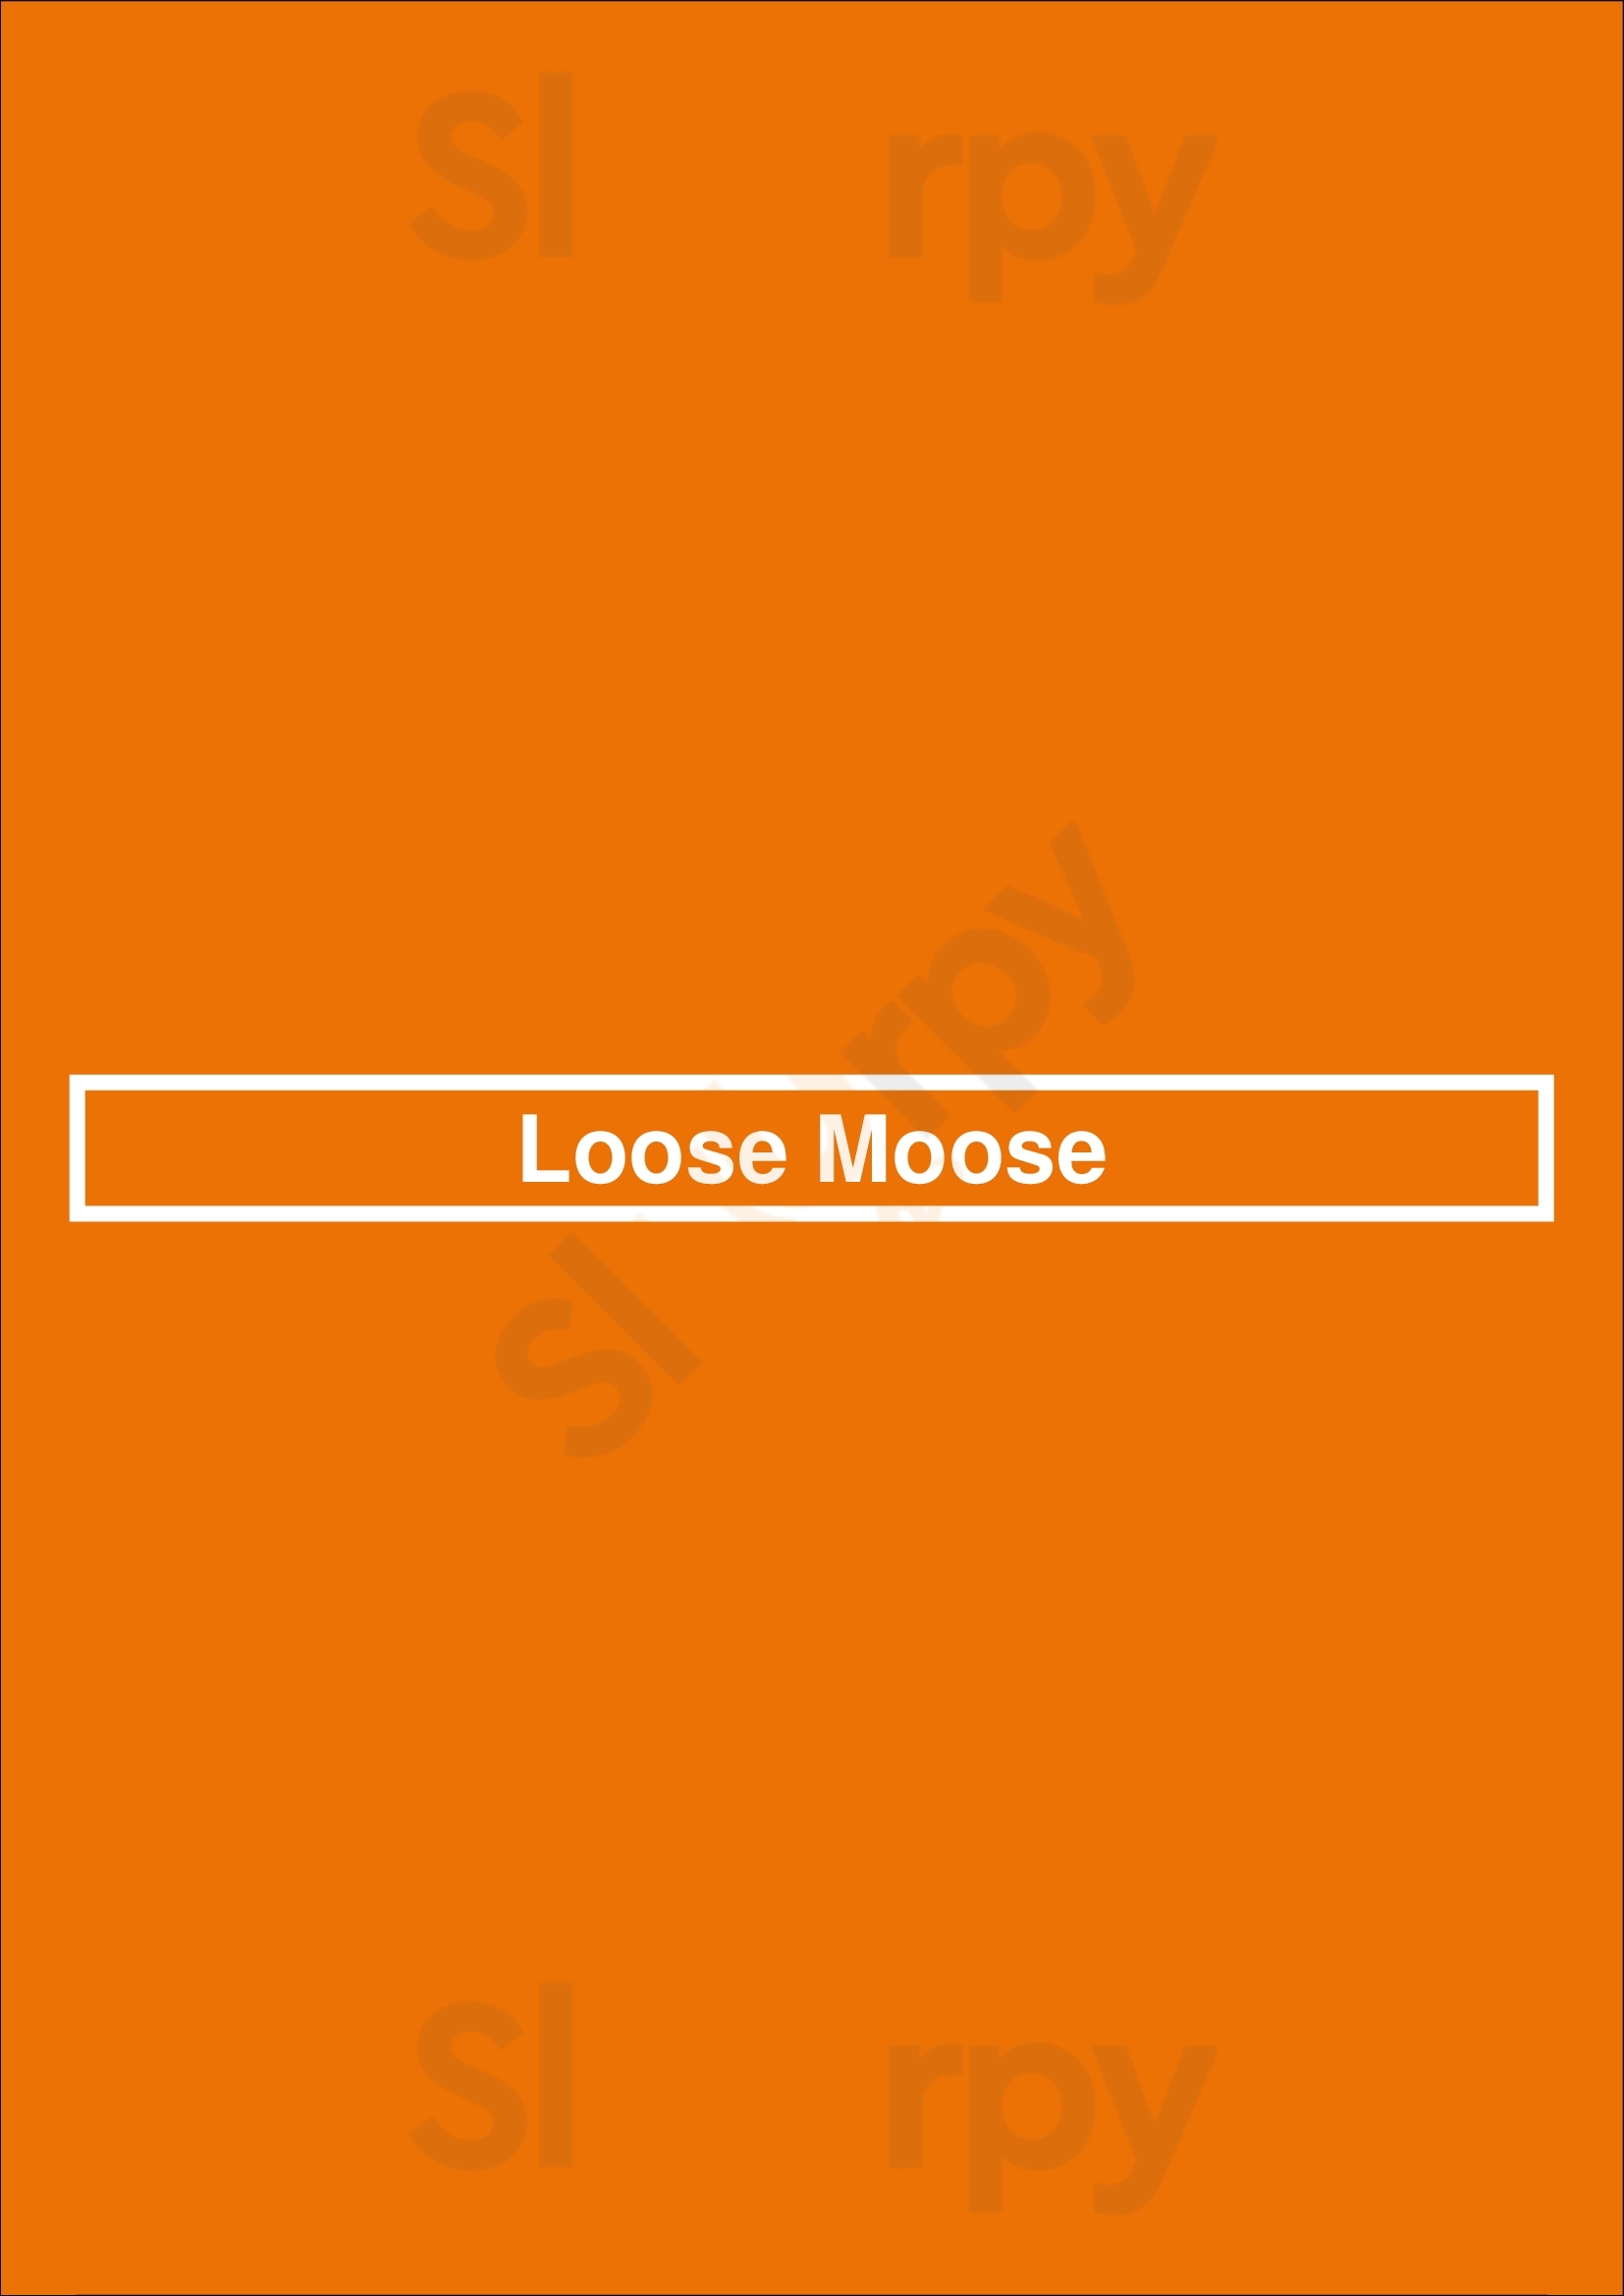 Loose Moose Toronto Menu - 1